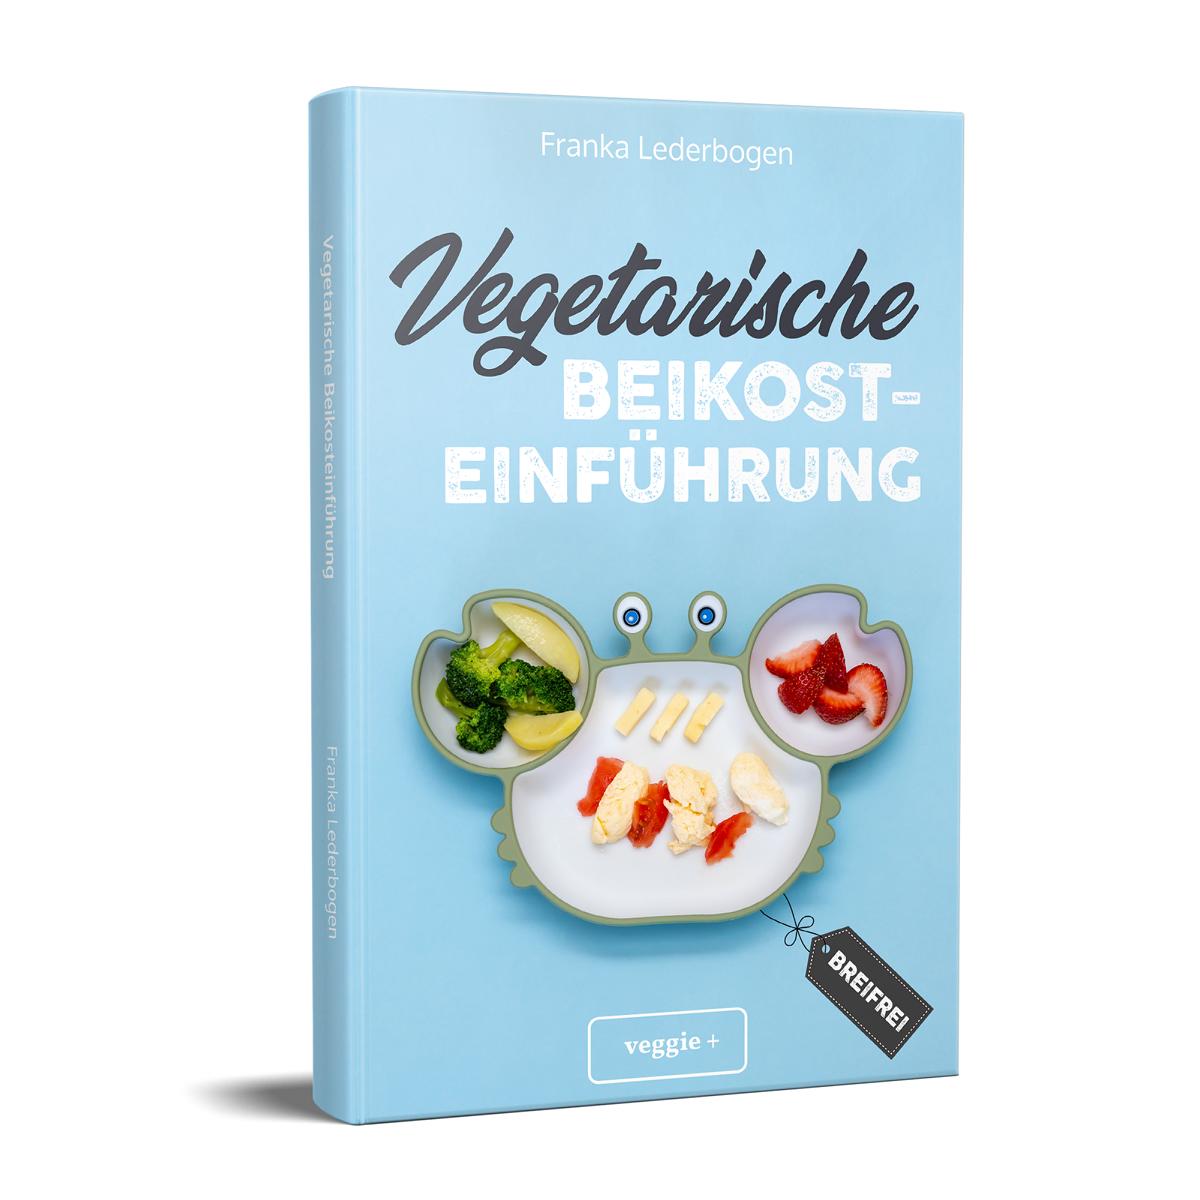 Vegetarische Beikosteinführung (breifrei): Das große Kochbuch für breifreie Beikostrezepte ohne Fleisch von Franka Lederbogen im veggie + Verlag